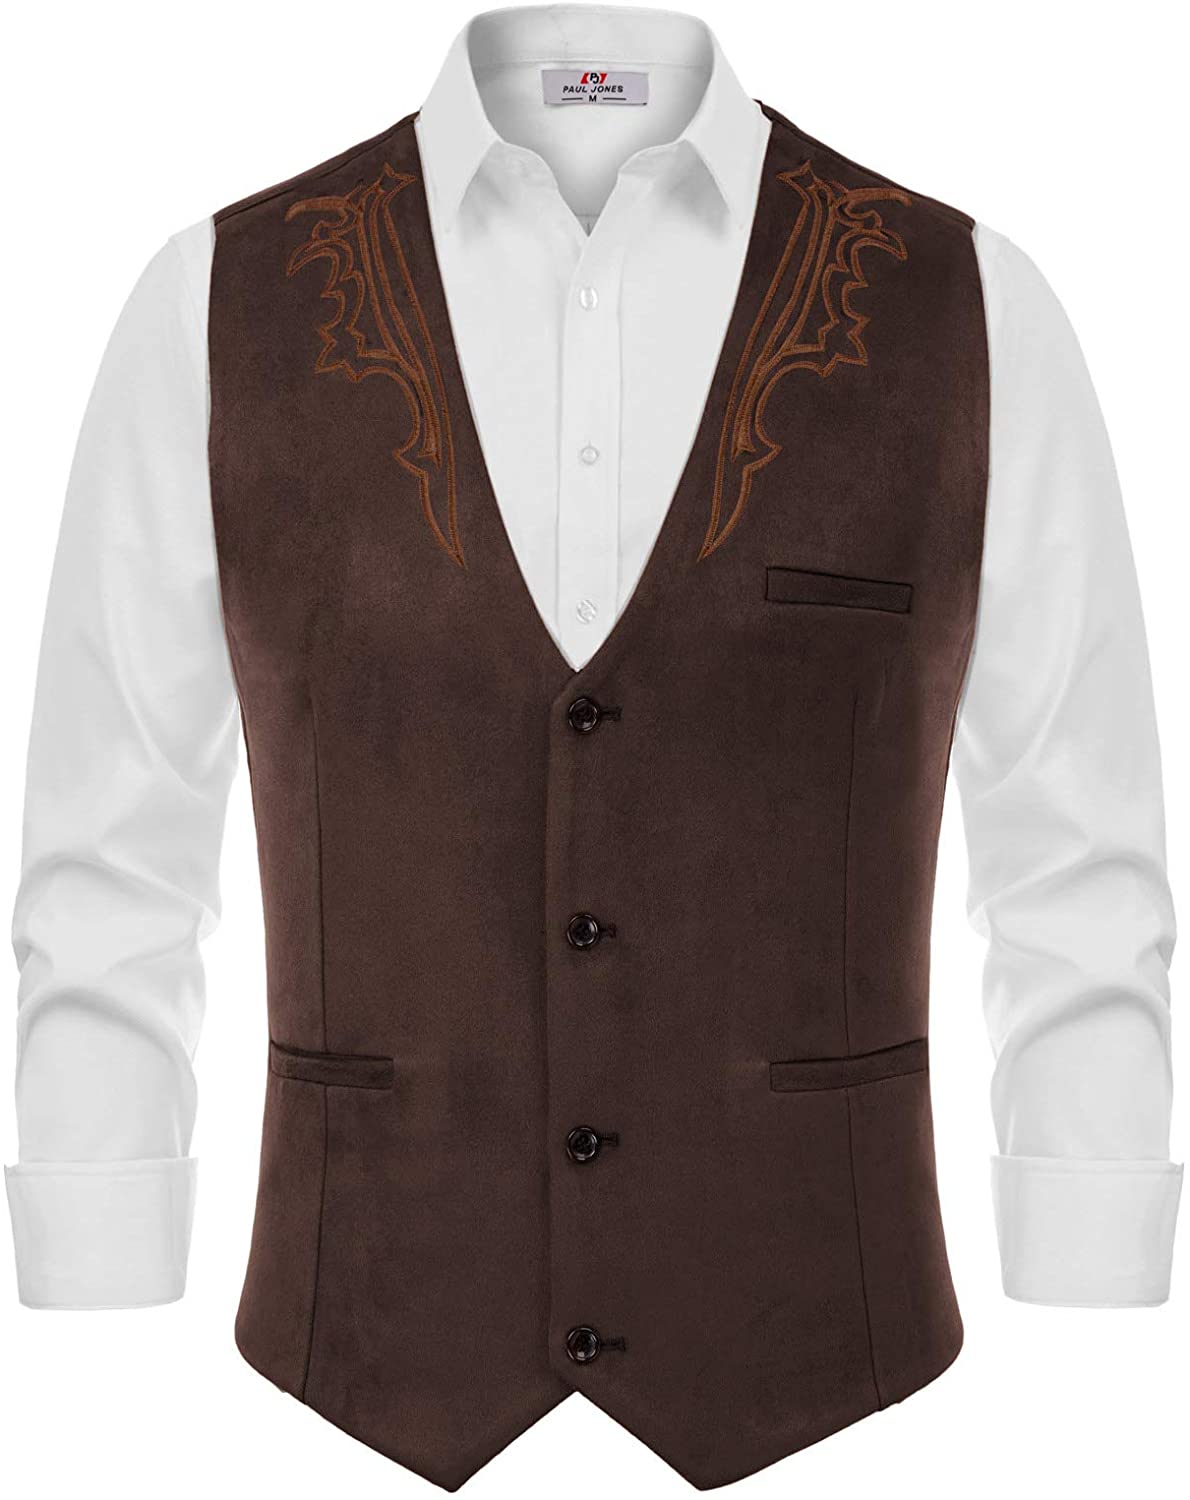 Men's Suede Leather Suit Vest Vintage Cowboy Style Jacket Slim Fit Waistcoats 